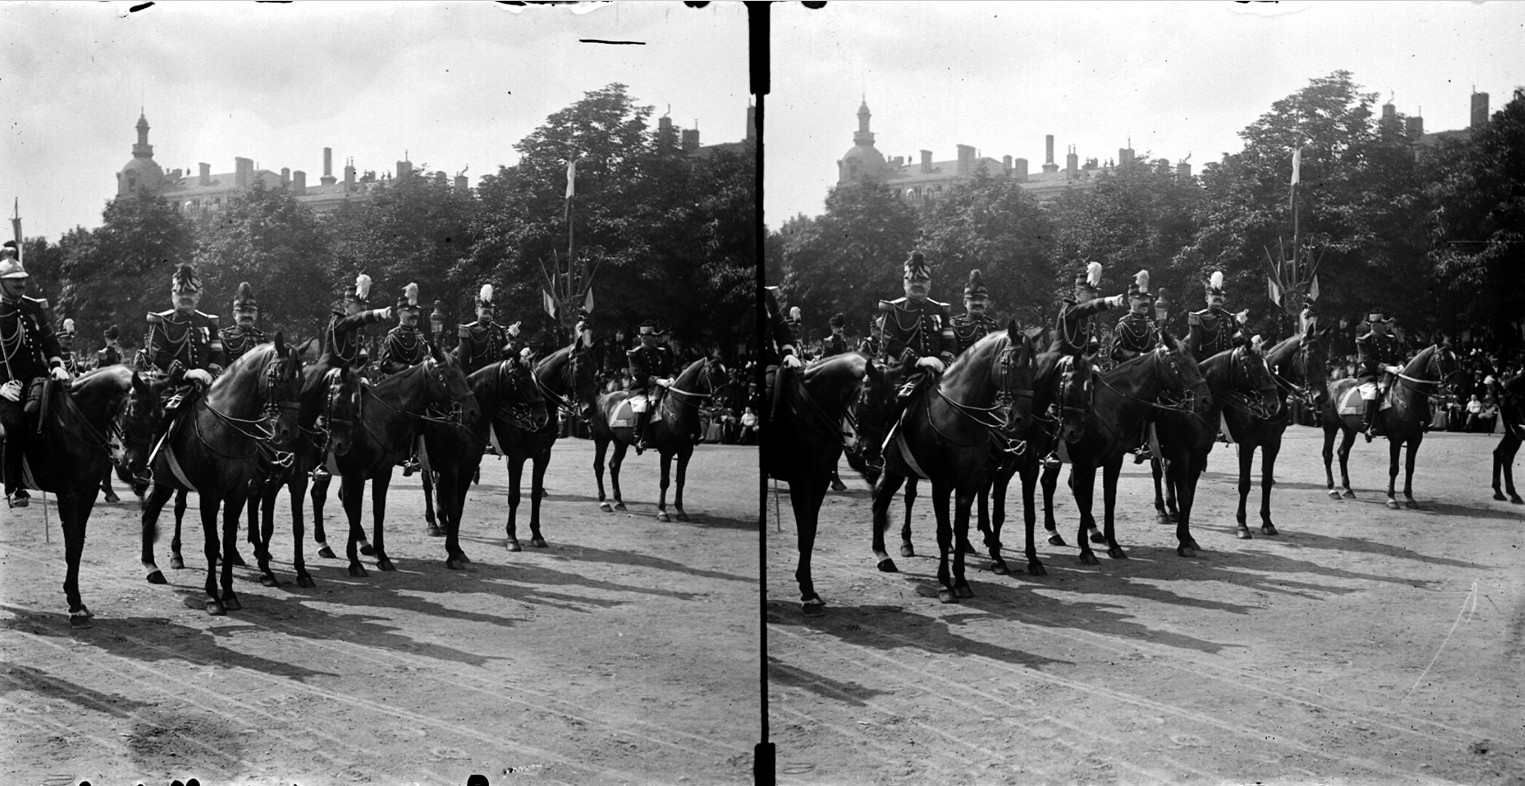 Revue militaire place Bellecour : photo stéréoscopique sur plaque de verre (vers 1900, cote : 10PH/37)